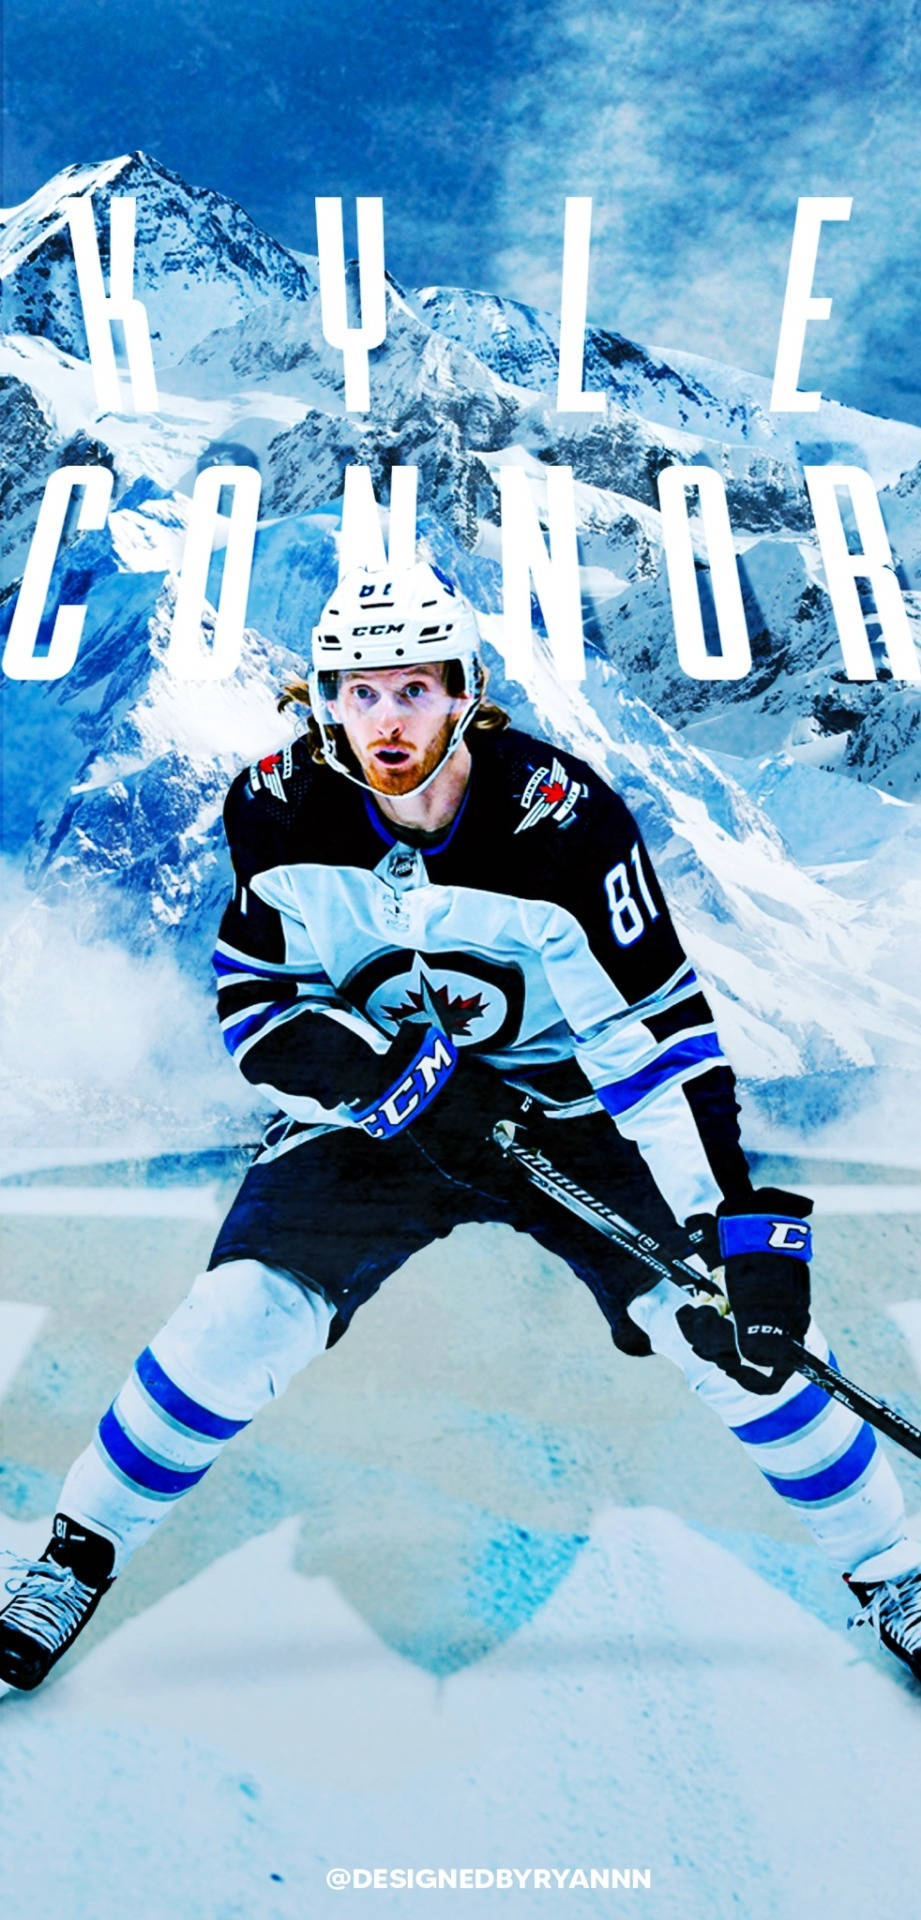 Winnipegjets Spieler Kyle Connor Grafik-kunst Zum Thema Us-amerikanischer Eishockey Wallpaper